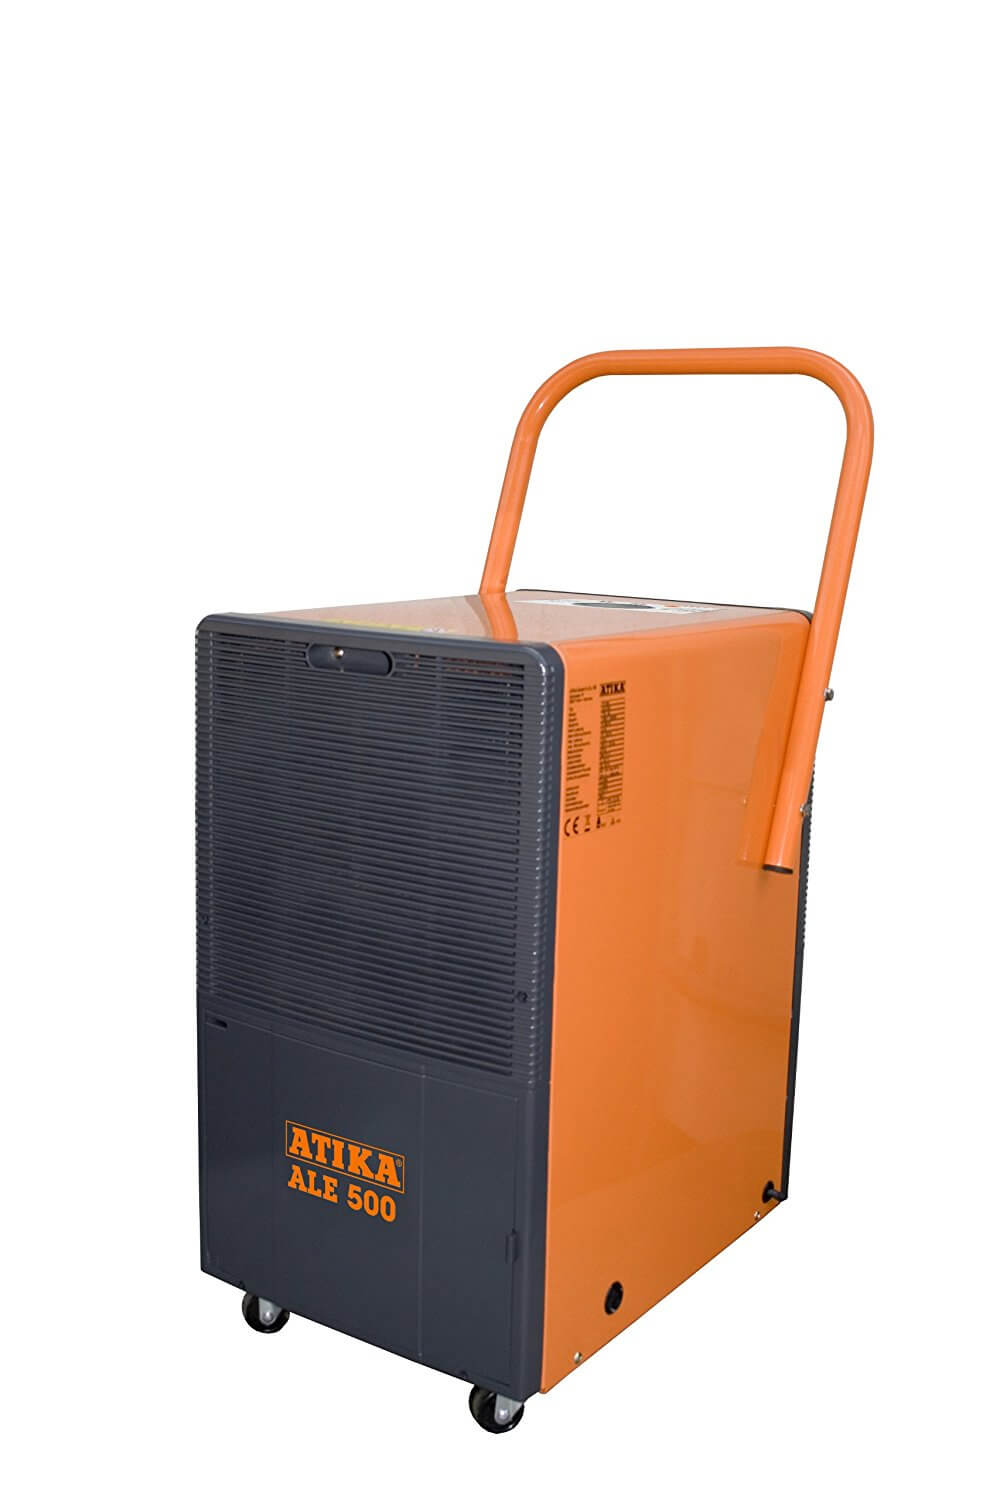 Atika Bautrockner Test Luftentfeuchter ALE 500 303990